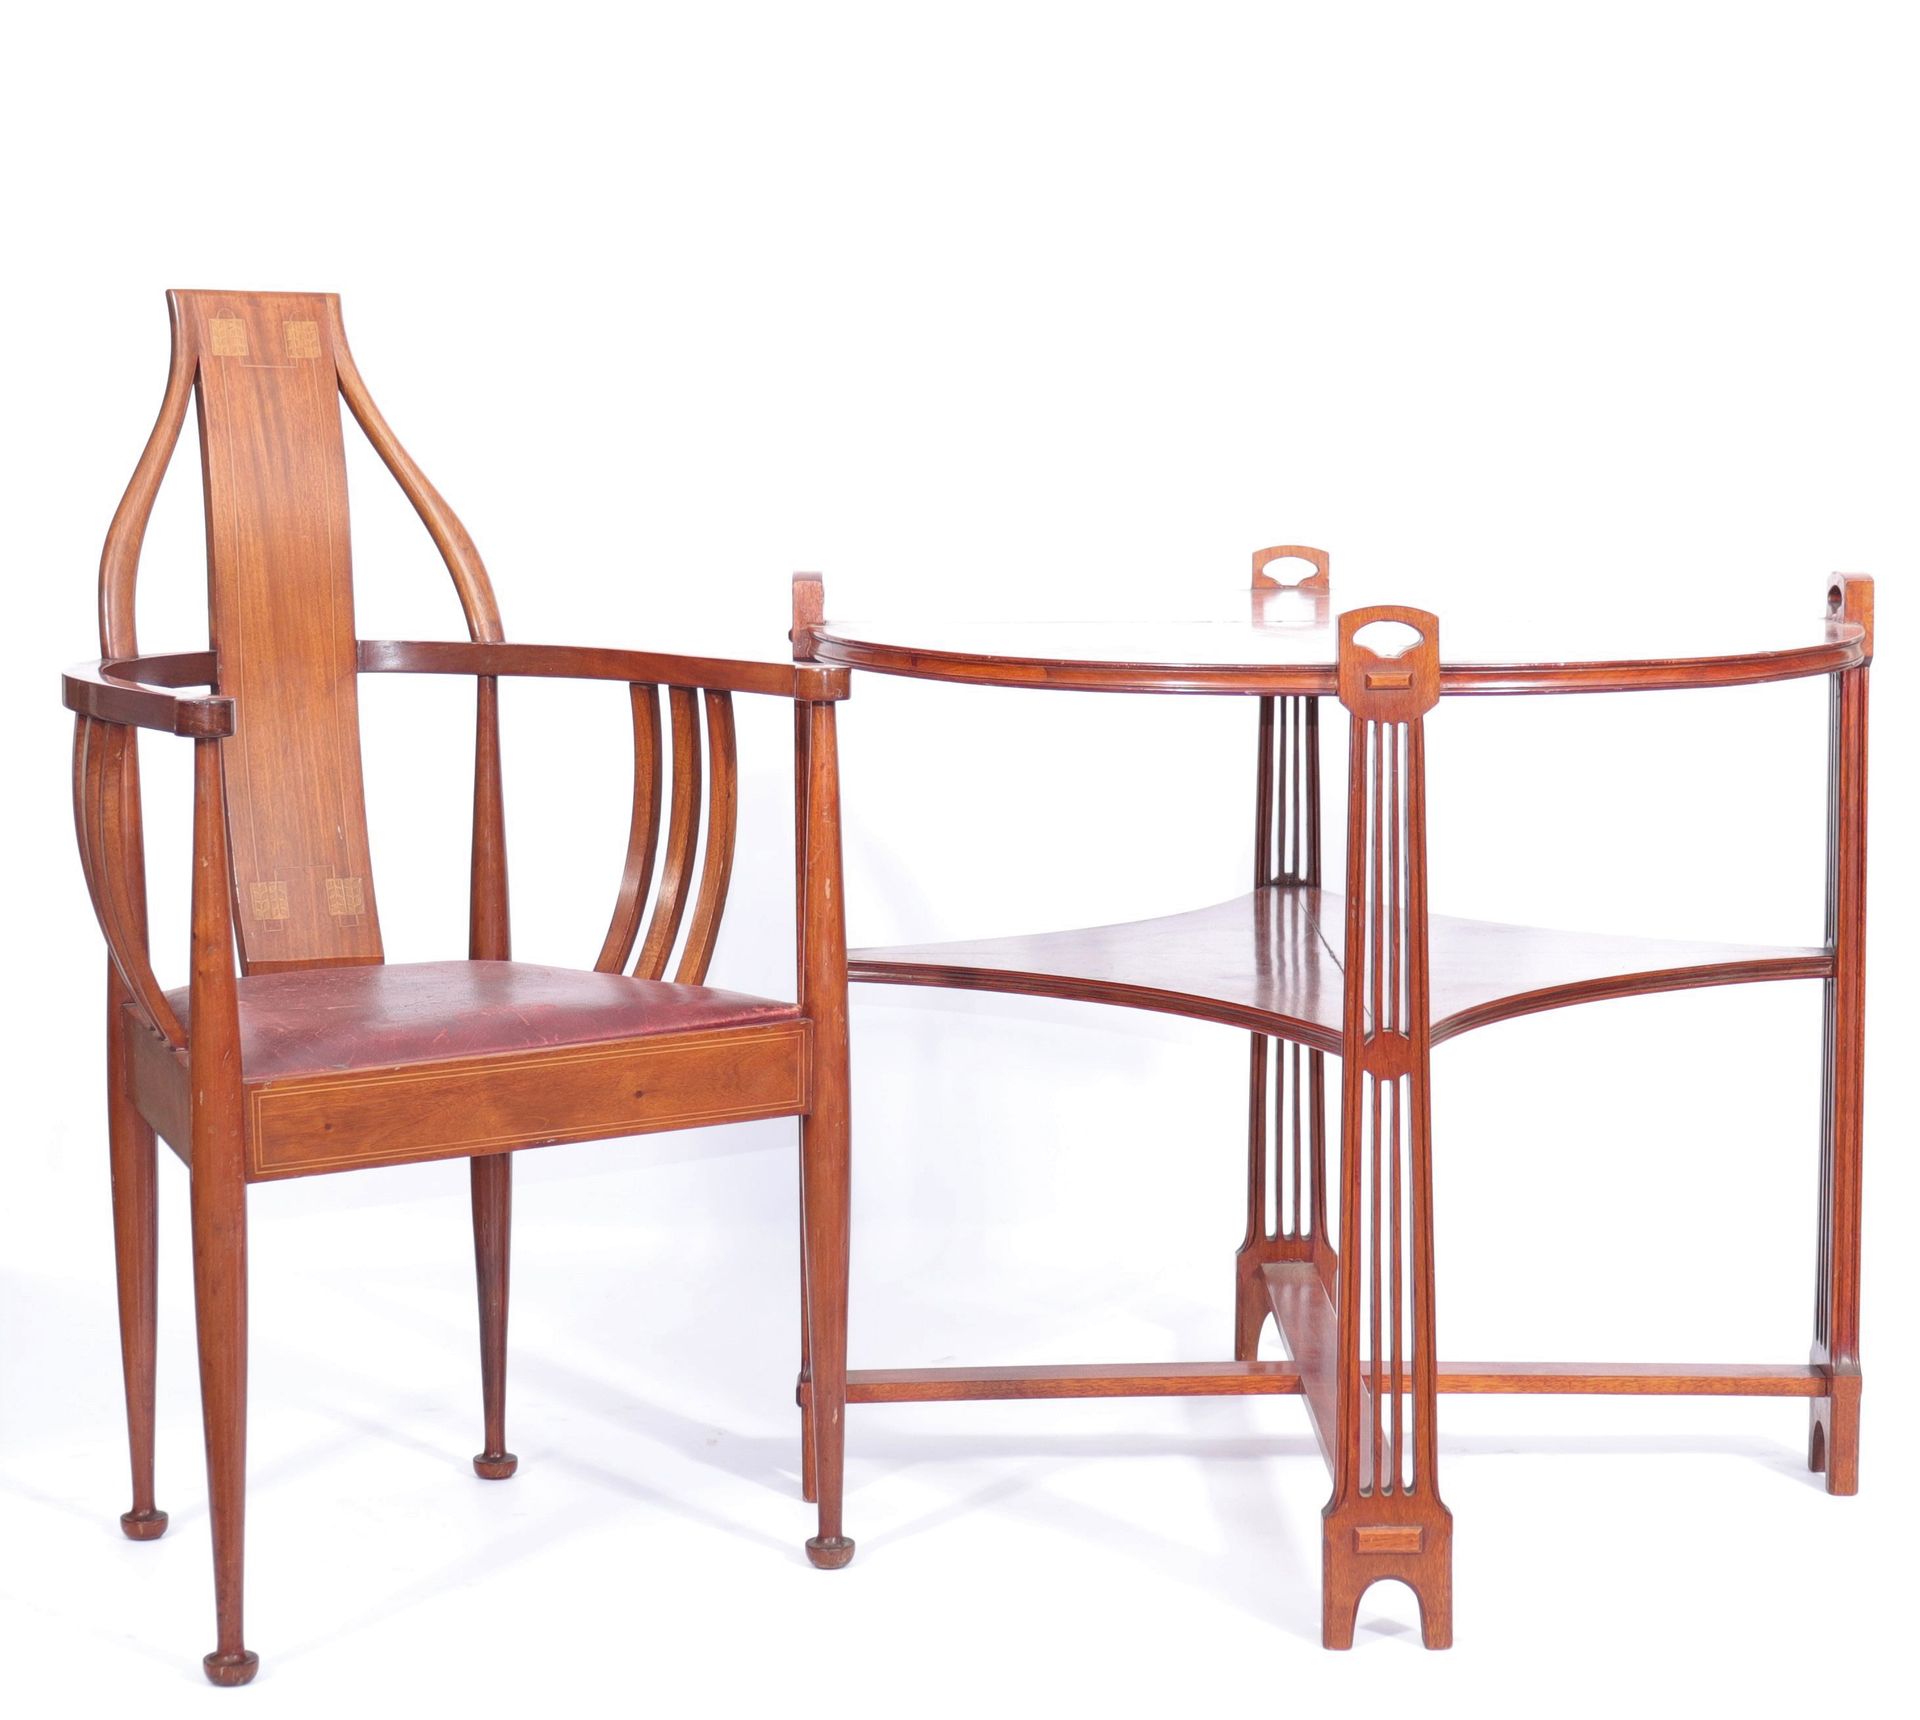 Autriche - Table + 4 chaises en acajou - 1900 奥地利 - 桃花心木桌+4把椅子 - 1900
年代: Xth
尺寸&hellip;